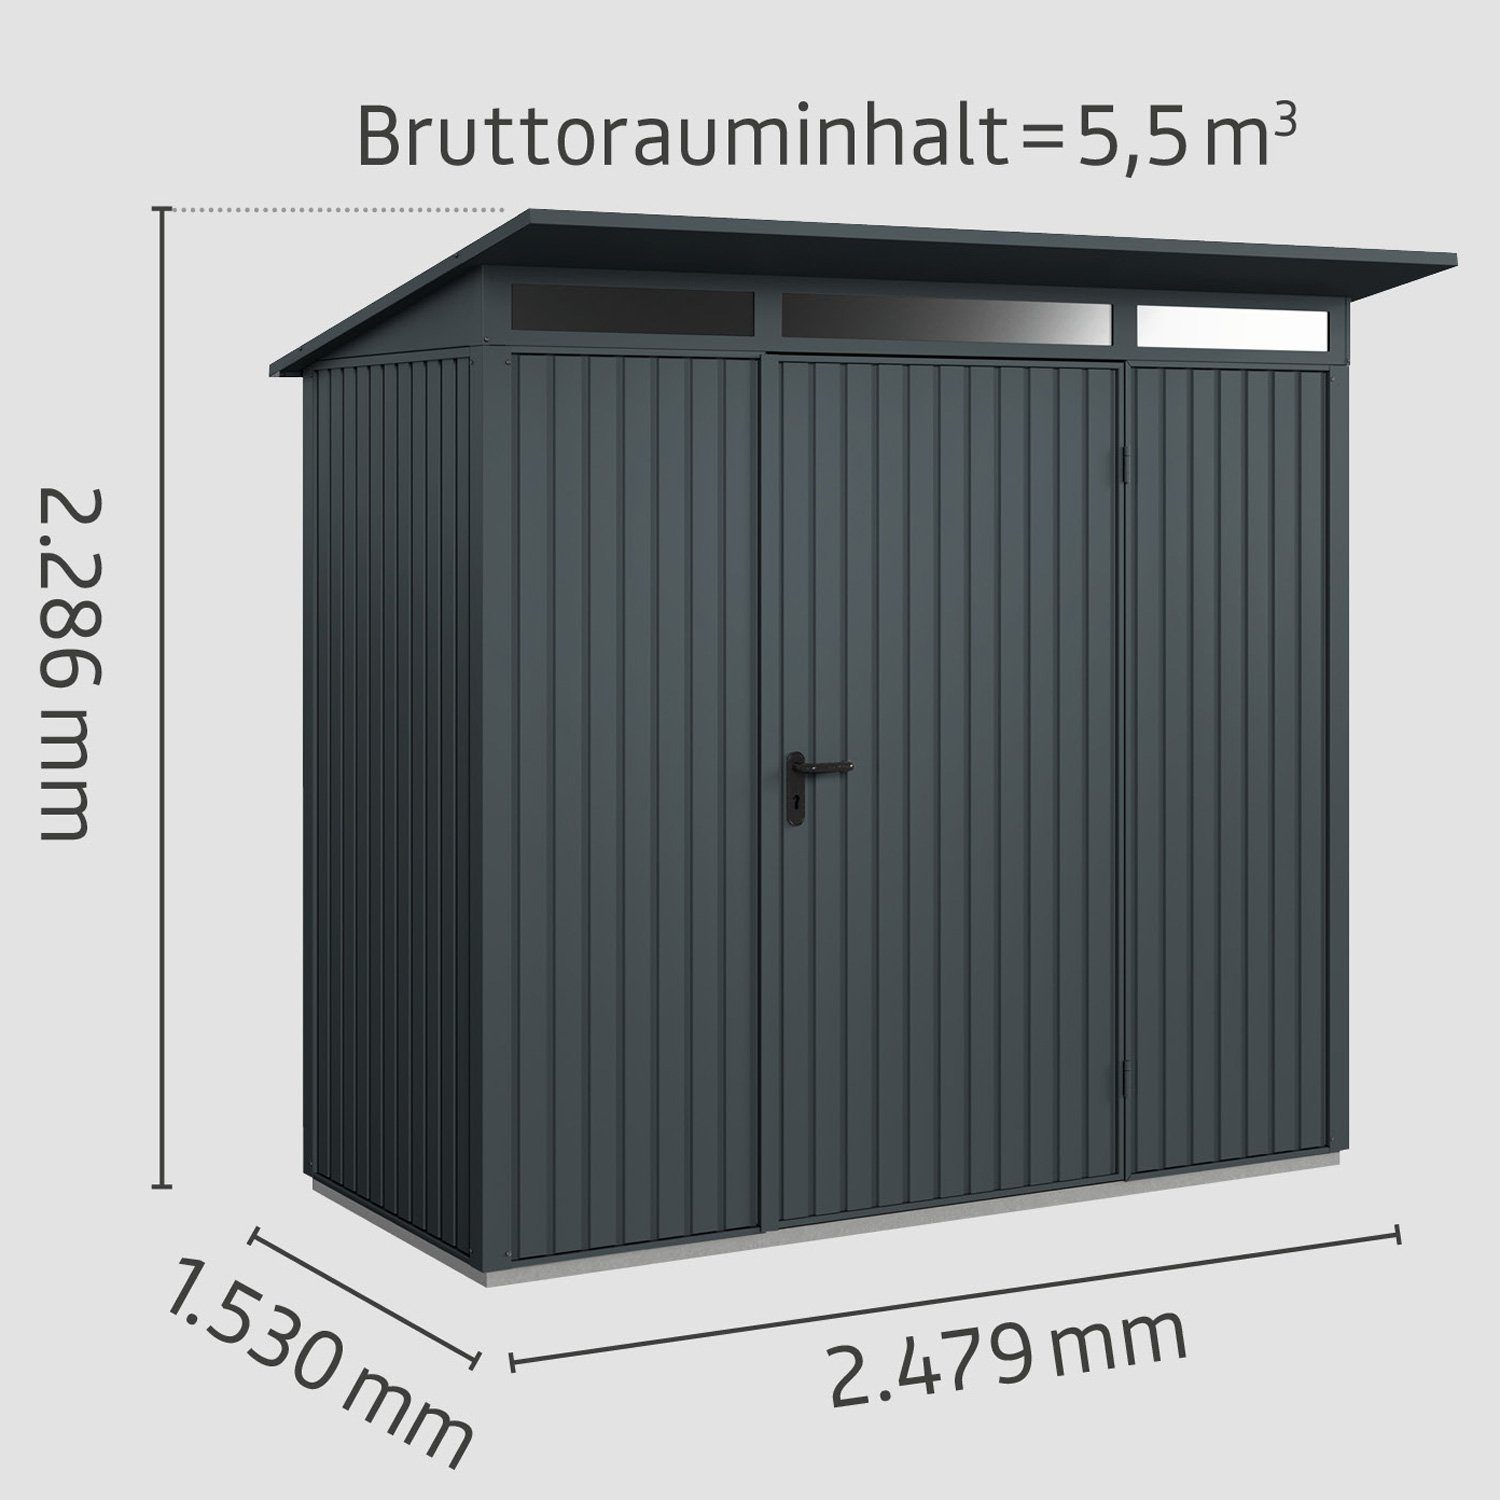 Hörmann Ecostar 1, Tür mit Pultdach Trend Gerätehaus 1-flüglige Typ Metall-Gerätehaus anthrazitgrau